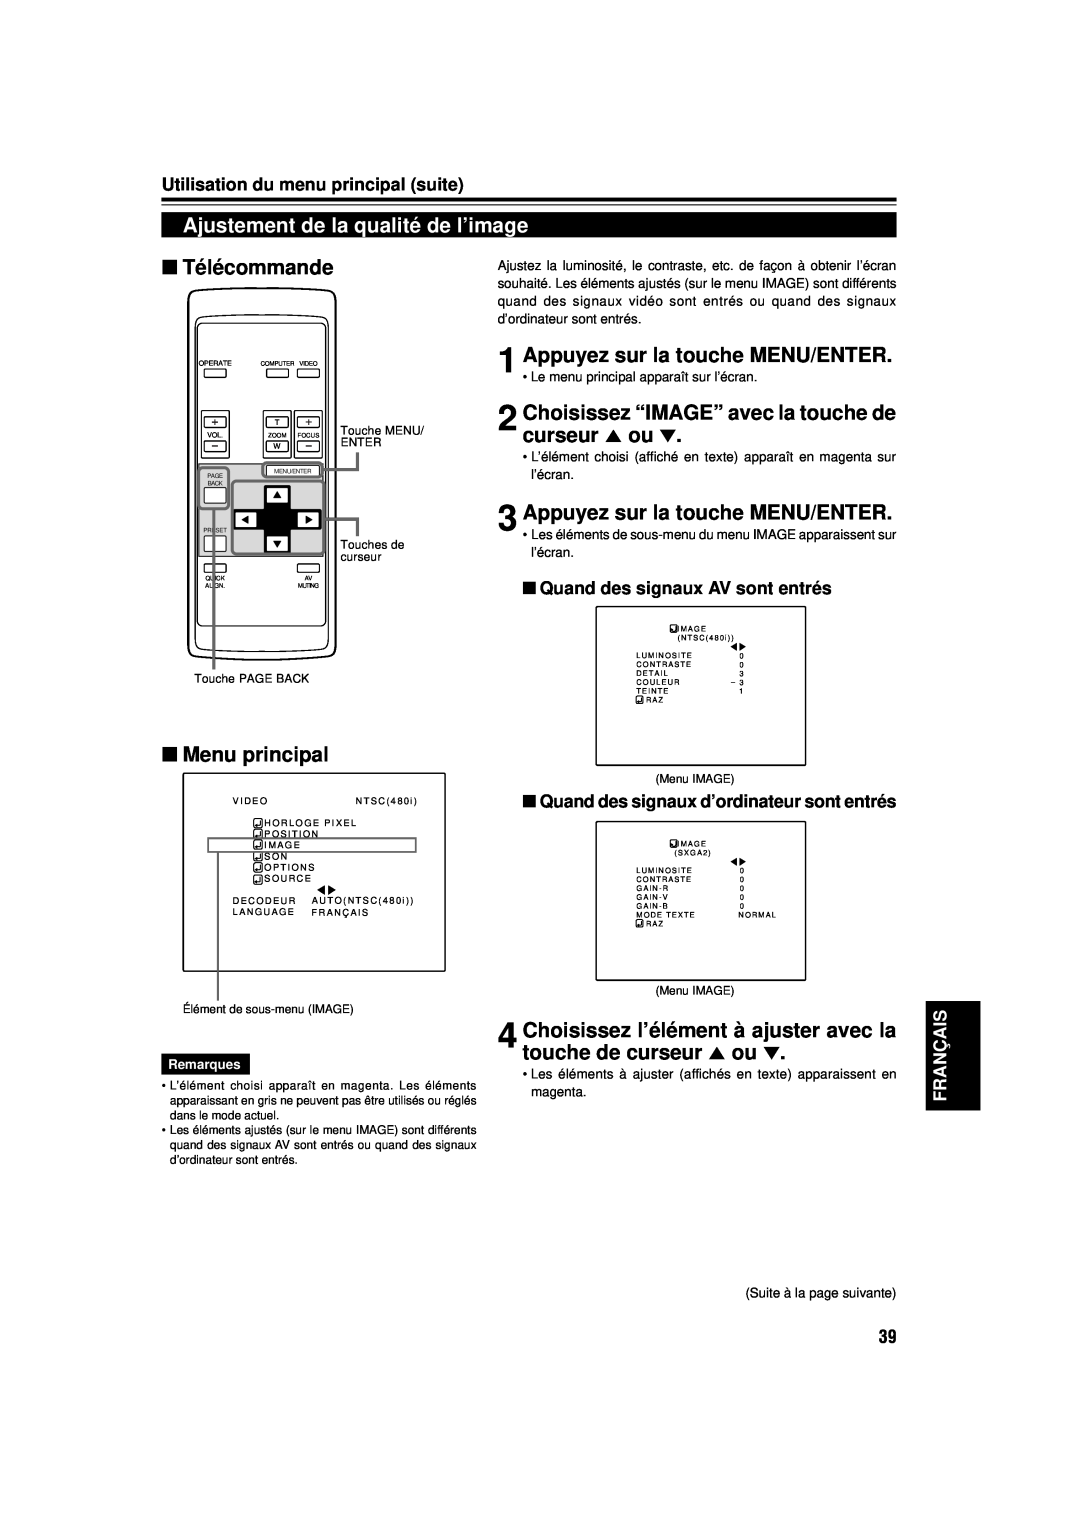 JVC DLA-M15U manual Ajustement de la qualité de l’image, Choisissez “IMAGE” avec la touche de curseur 5 ou, Télécommande 